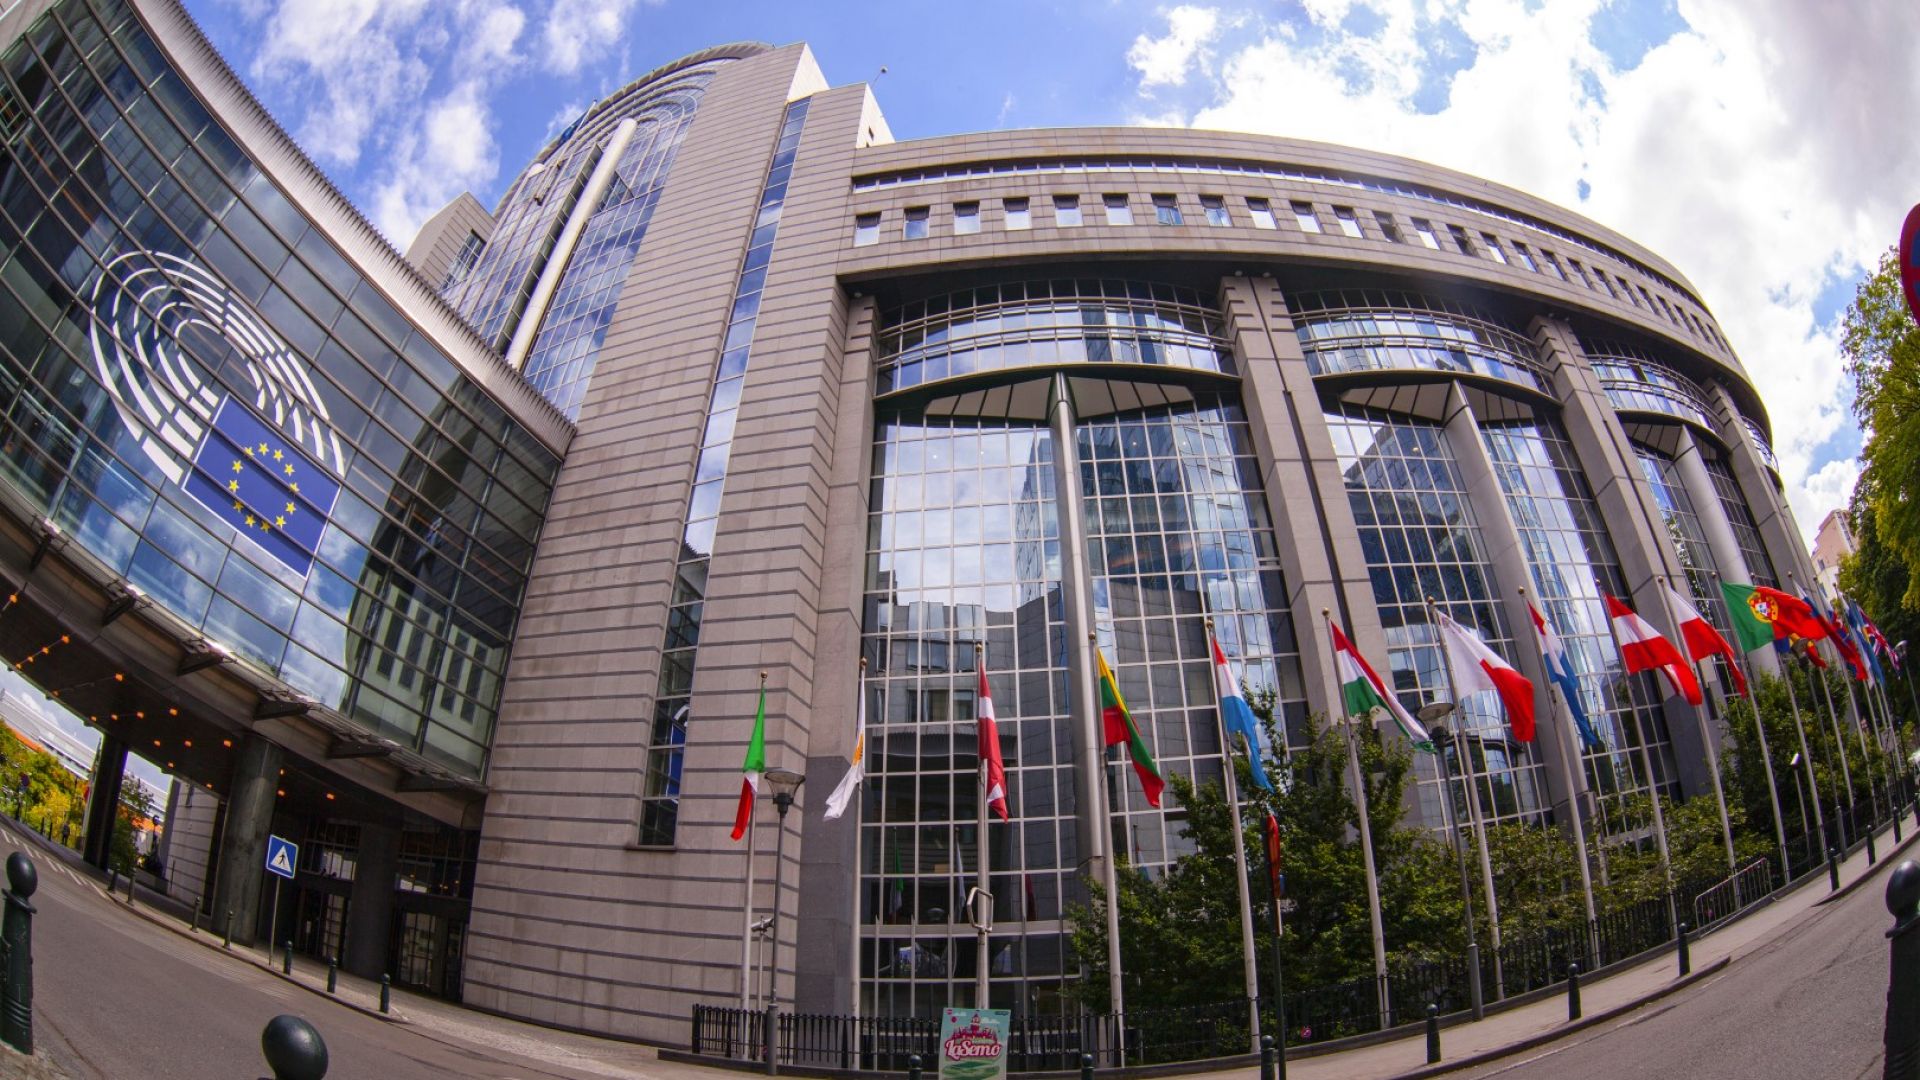 Европейската комисия с четири наказателни процедури срещу България